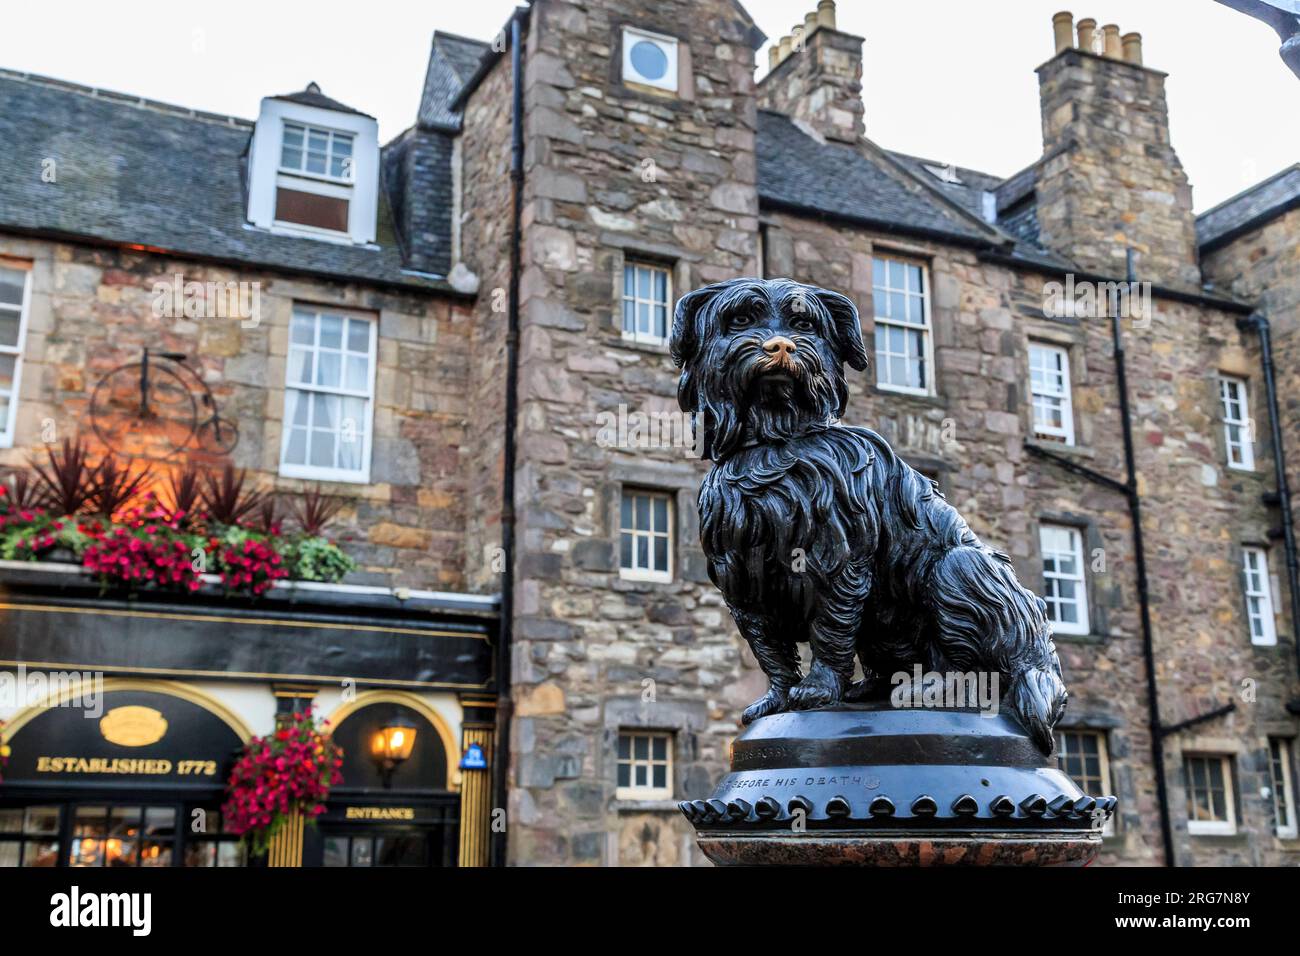 EDINBURGH, GROSSBRITANNIEN - 10. SEPTEMBER 2014: Dies ist ein Denkmal für den schottischen Himmelsterrier Bobby, der berühmt wurde für seine Hingabe an den Besitzer. Stockfoto